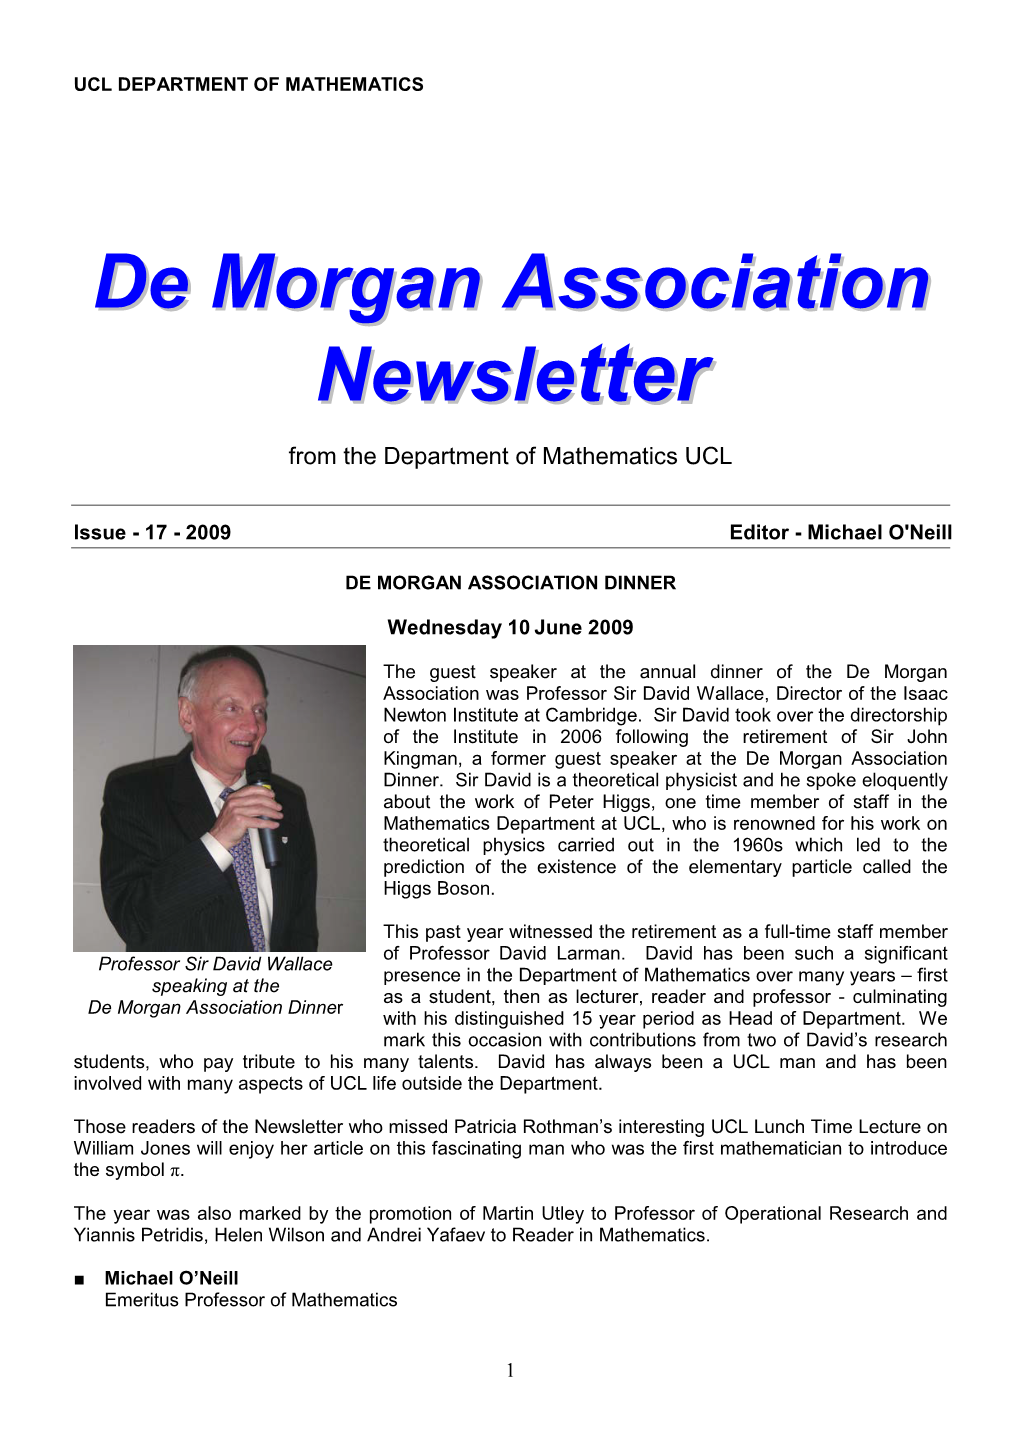 De Morgan Association Newsletter